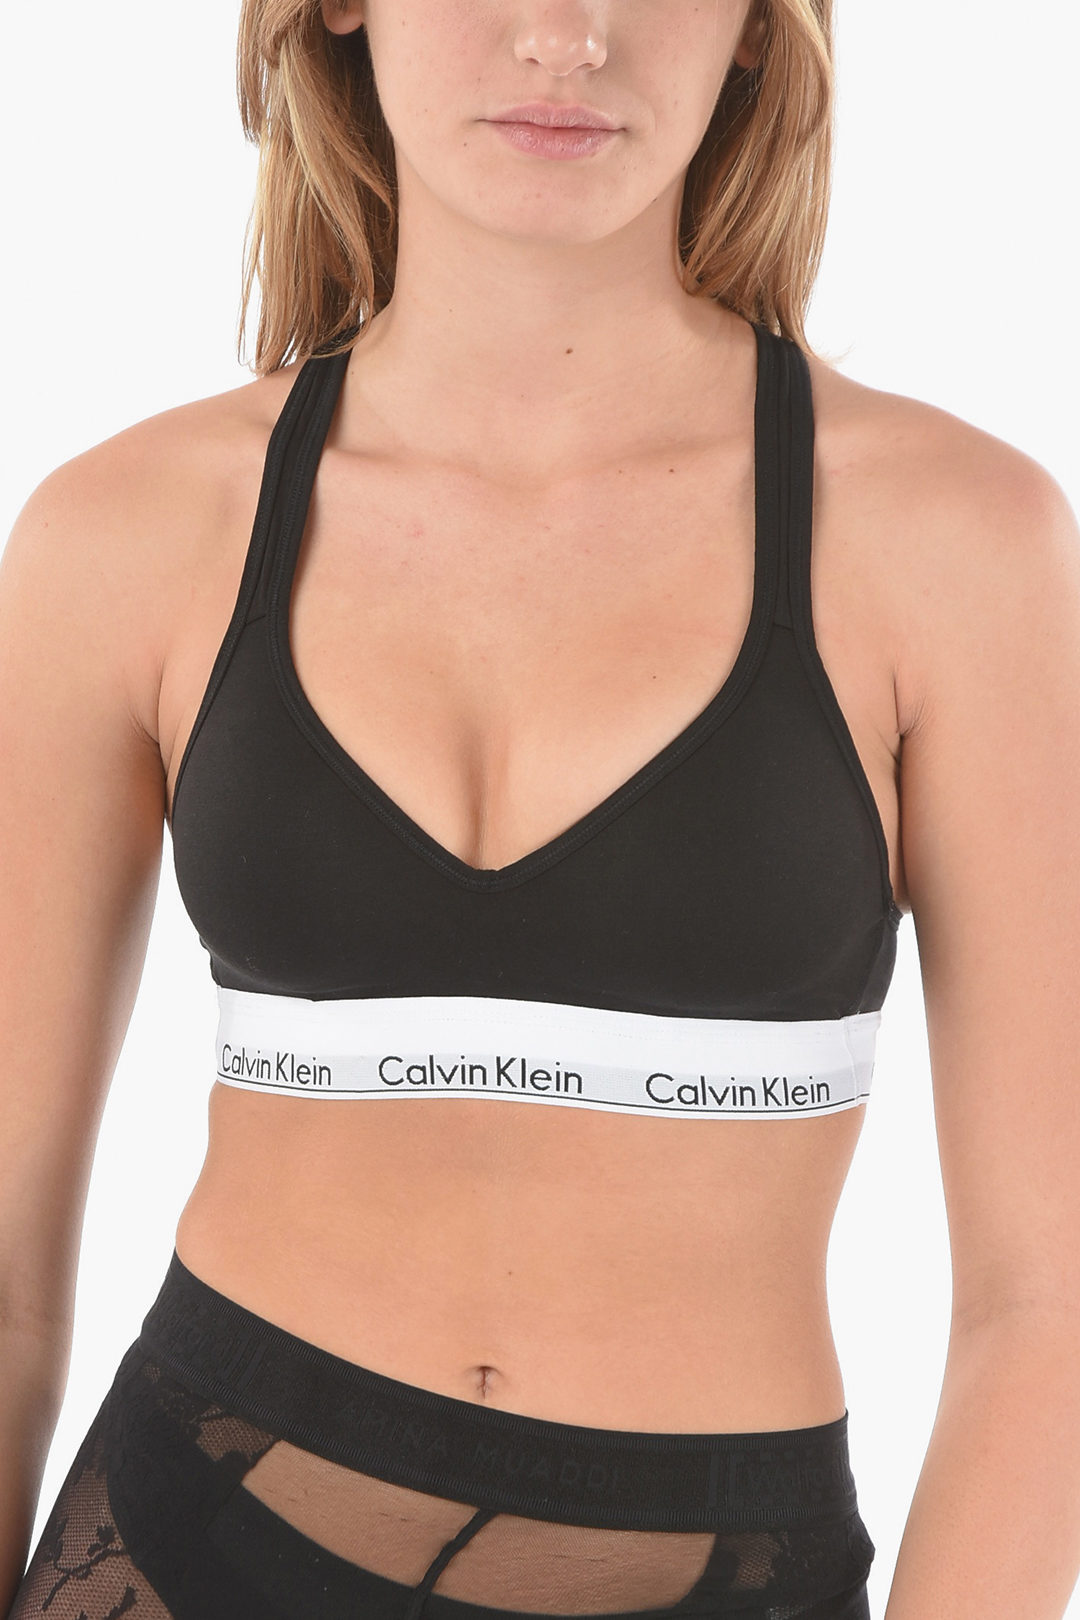 Calvin Klein Criss Cross Strap BRALETTE Padded Bra women - Glamood Outlet